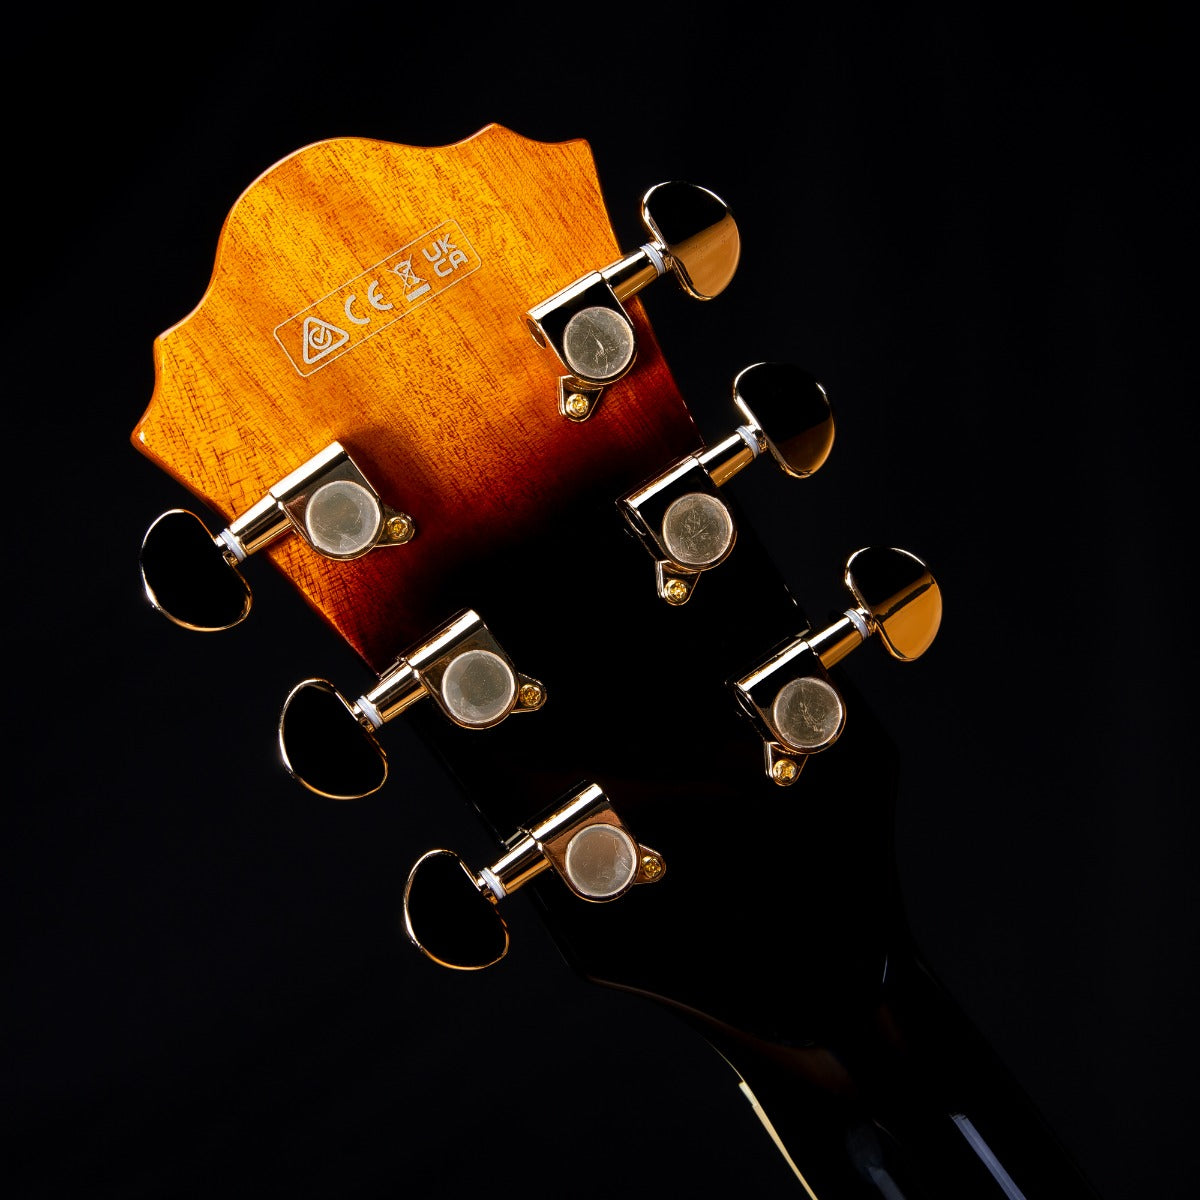 Ibanez AS93FM Artcore Expressionist Electric Guitar - Antique Yellow Sunburst view 11